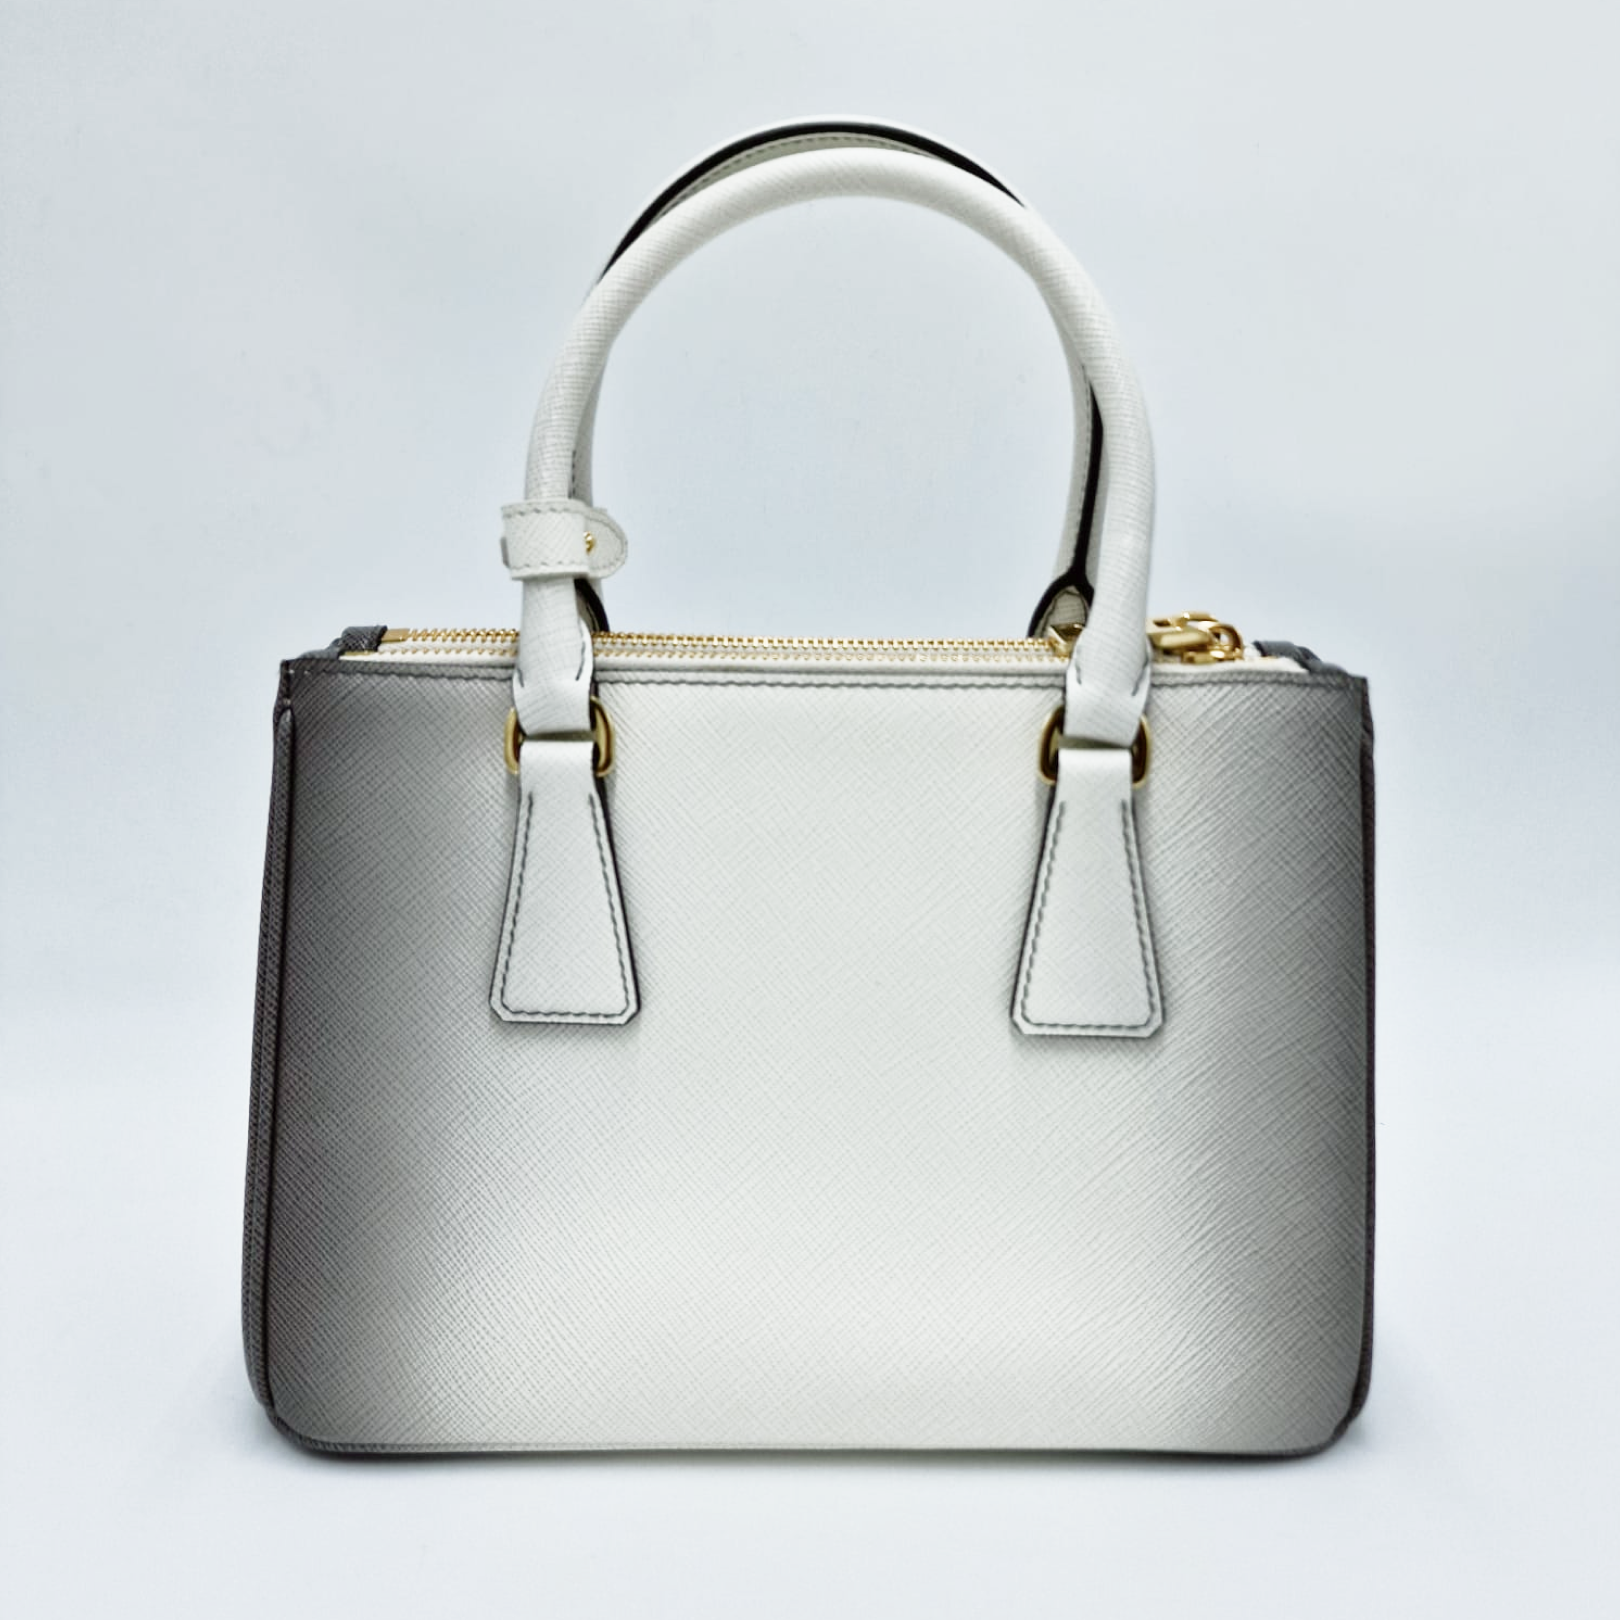 Prada Galleria Saffiano Leather Small Bag Ombré